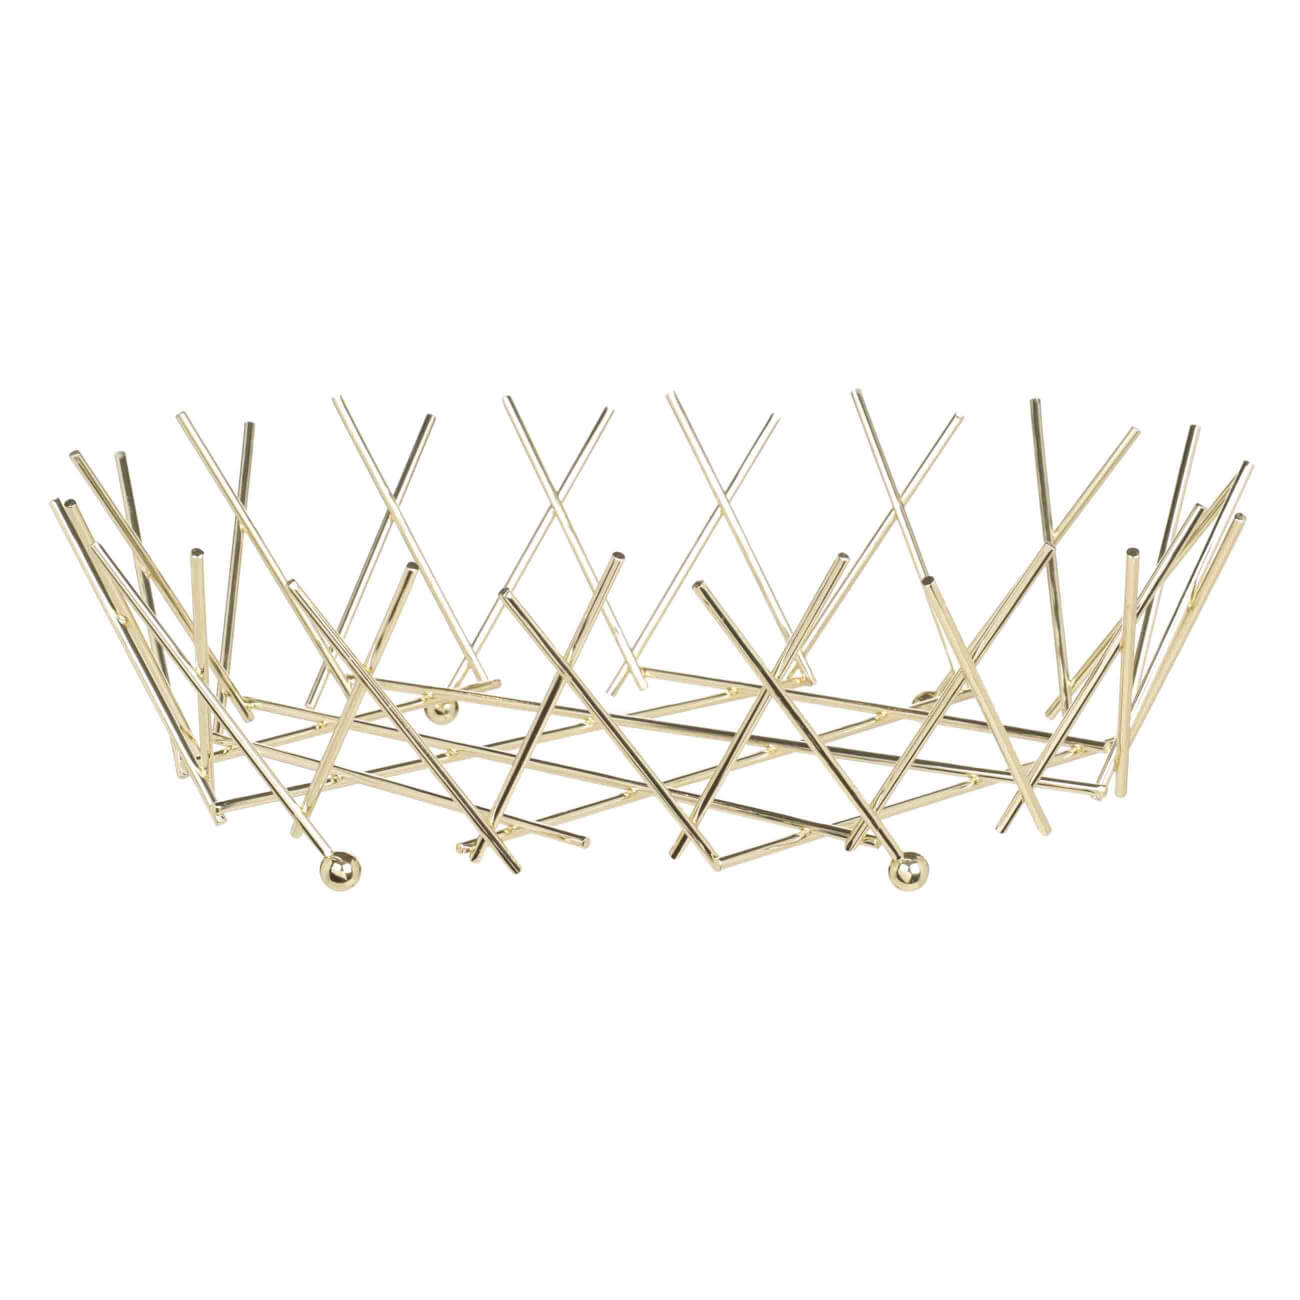 Fruit basket, 34 cm, metal, oval, golden, Twist gold изображение № 1